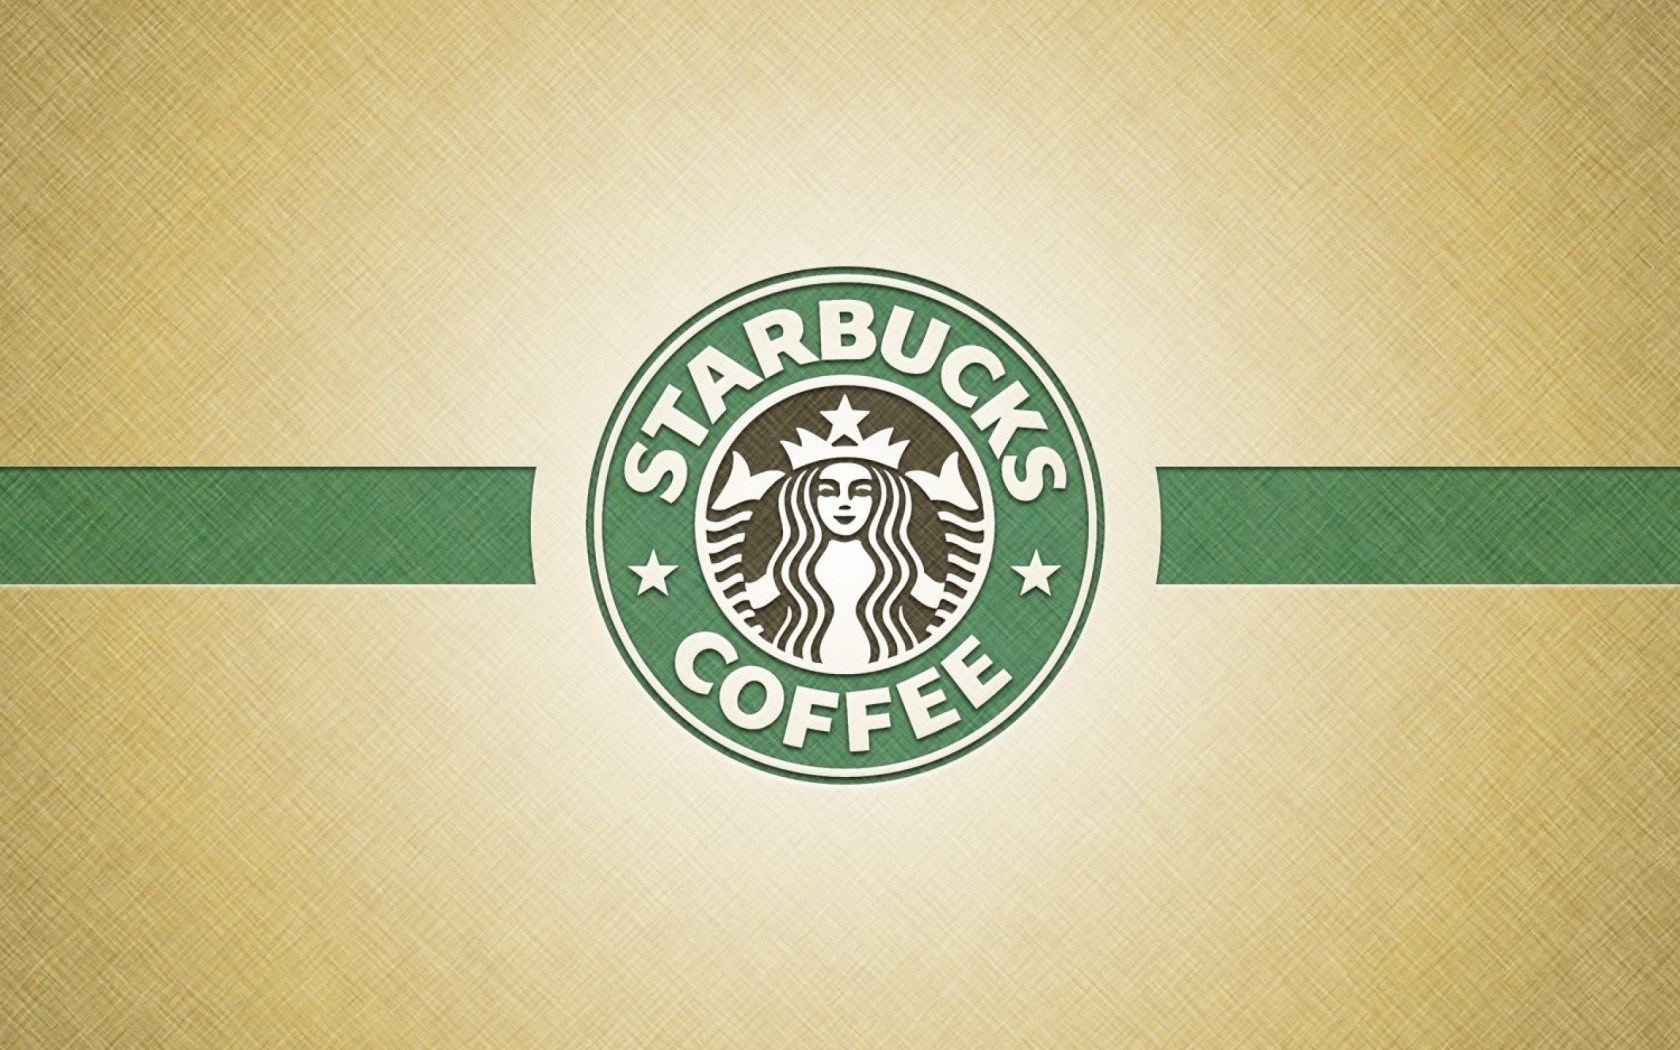 Starbucks Design Backgrounds for Powerpoint Templates - PPT Inside Starbucks Powerpoint Template